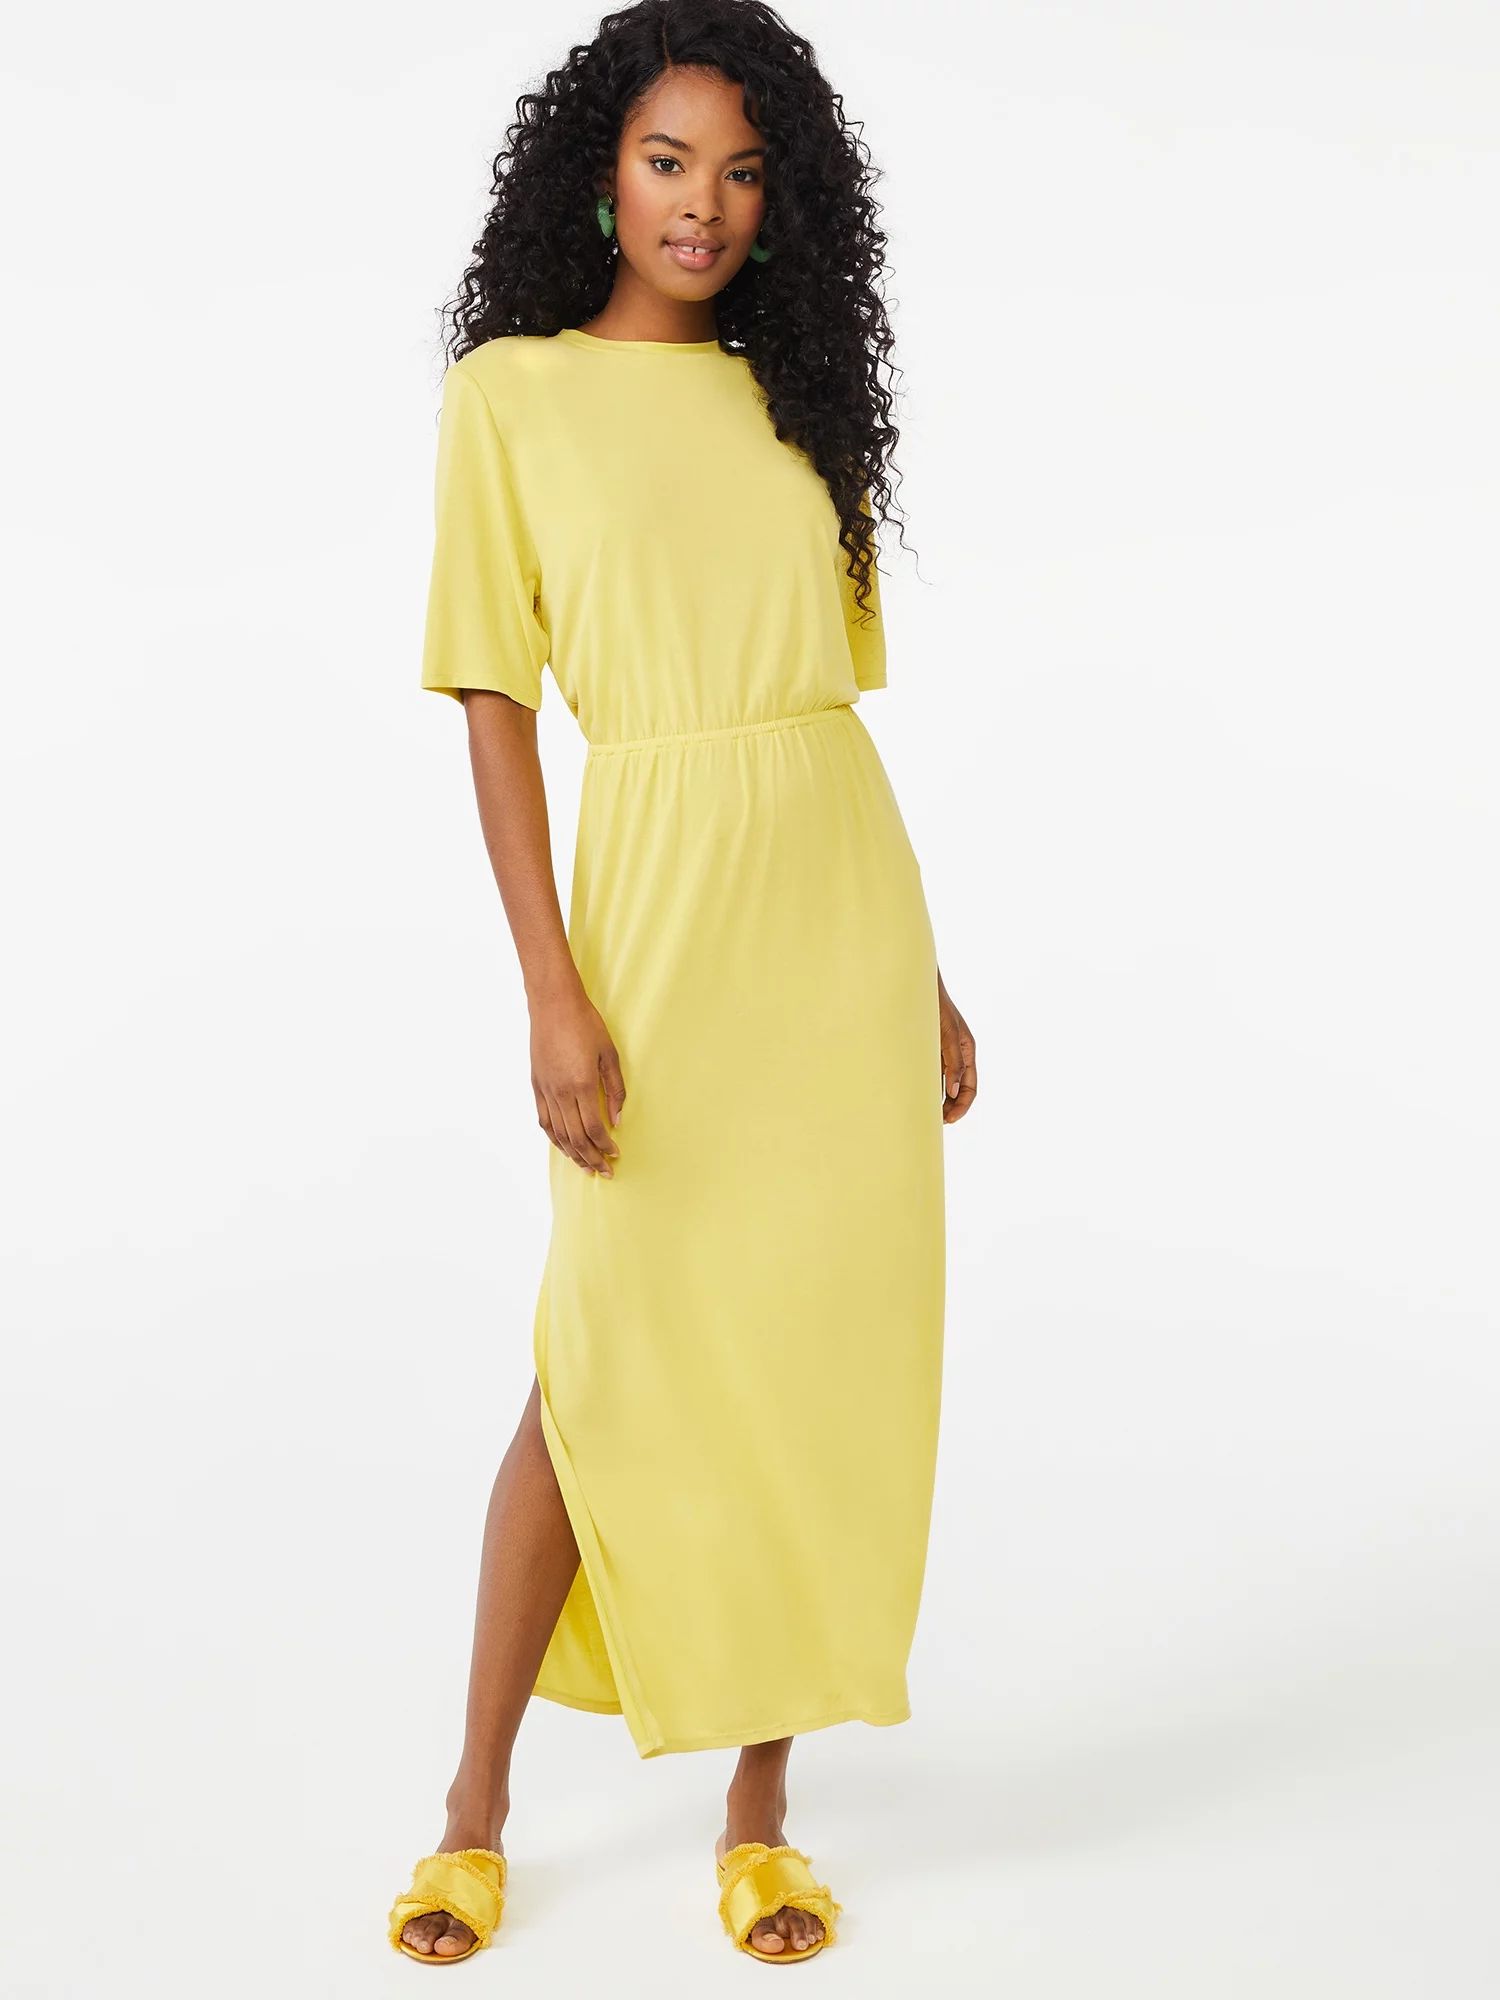 Scoop Women's Shoulder Pad Dress | Walmart (US)